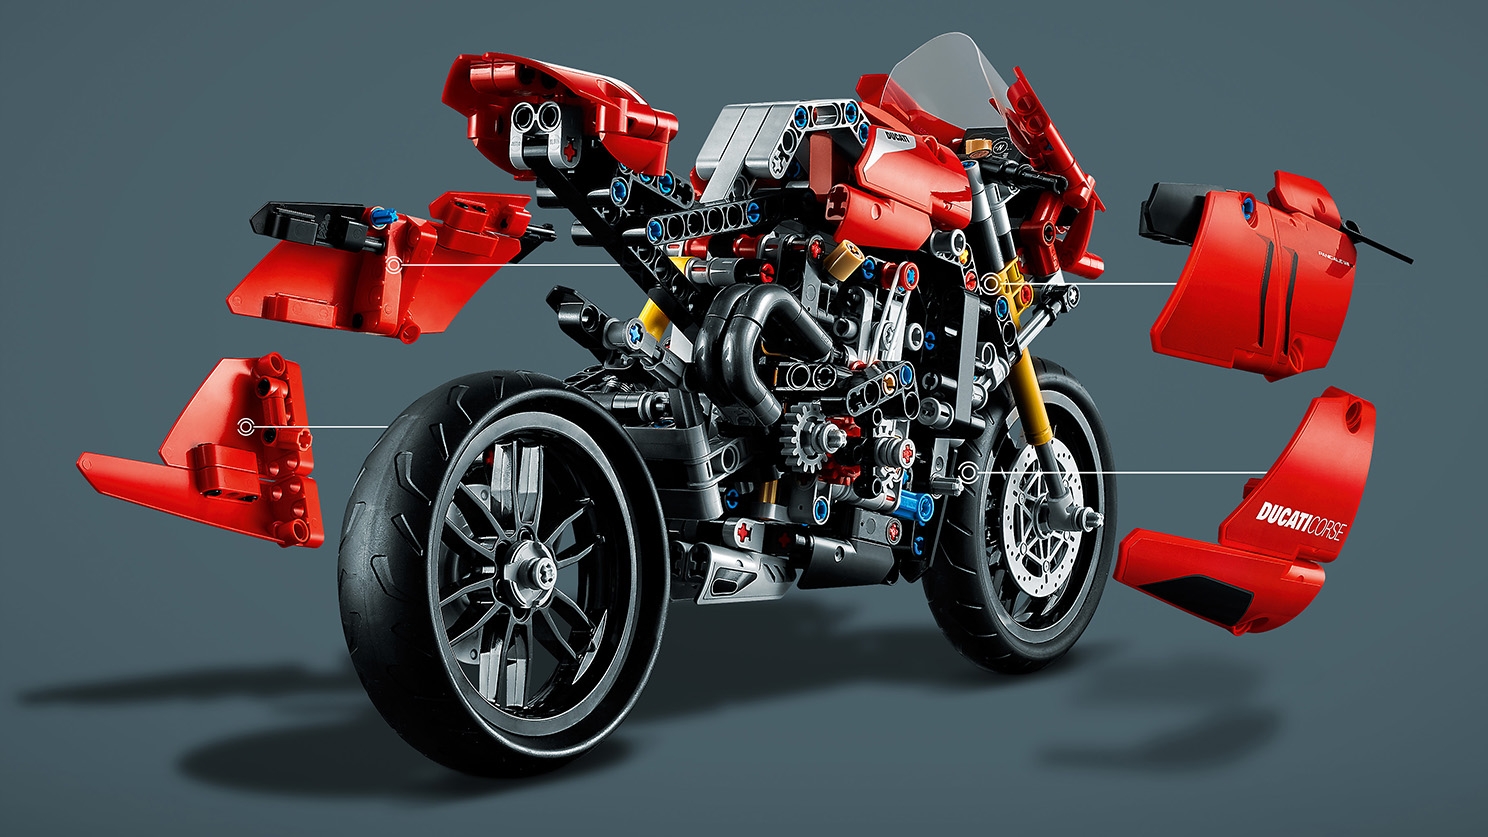 ドゥカティ パニガーレ V4 R 42107 - レゴ®テクニックセット - LEGO ...